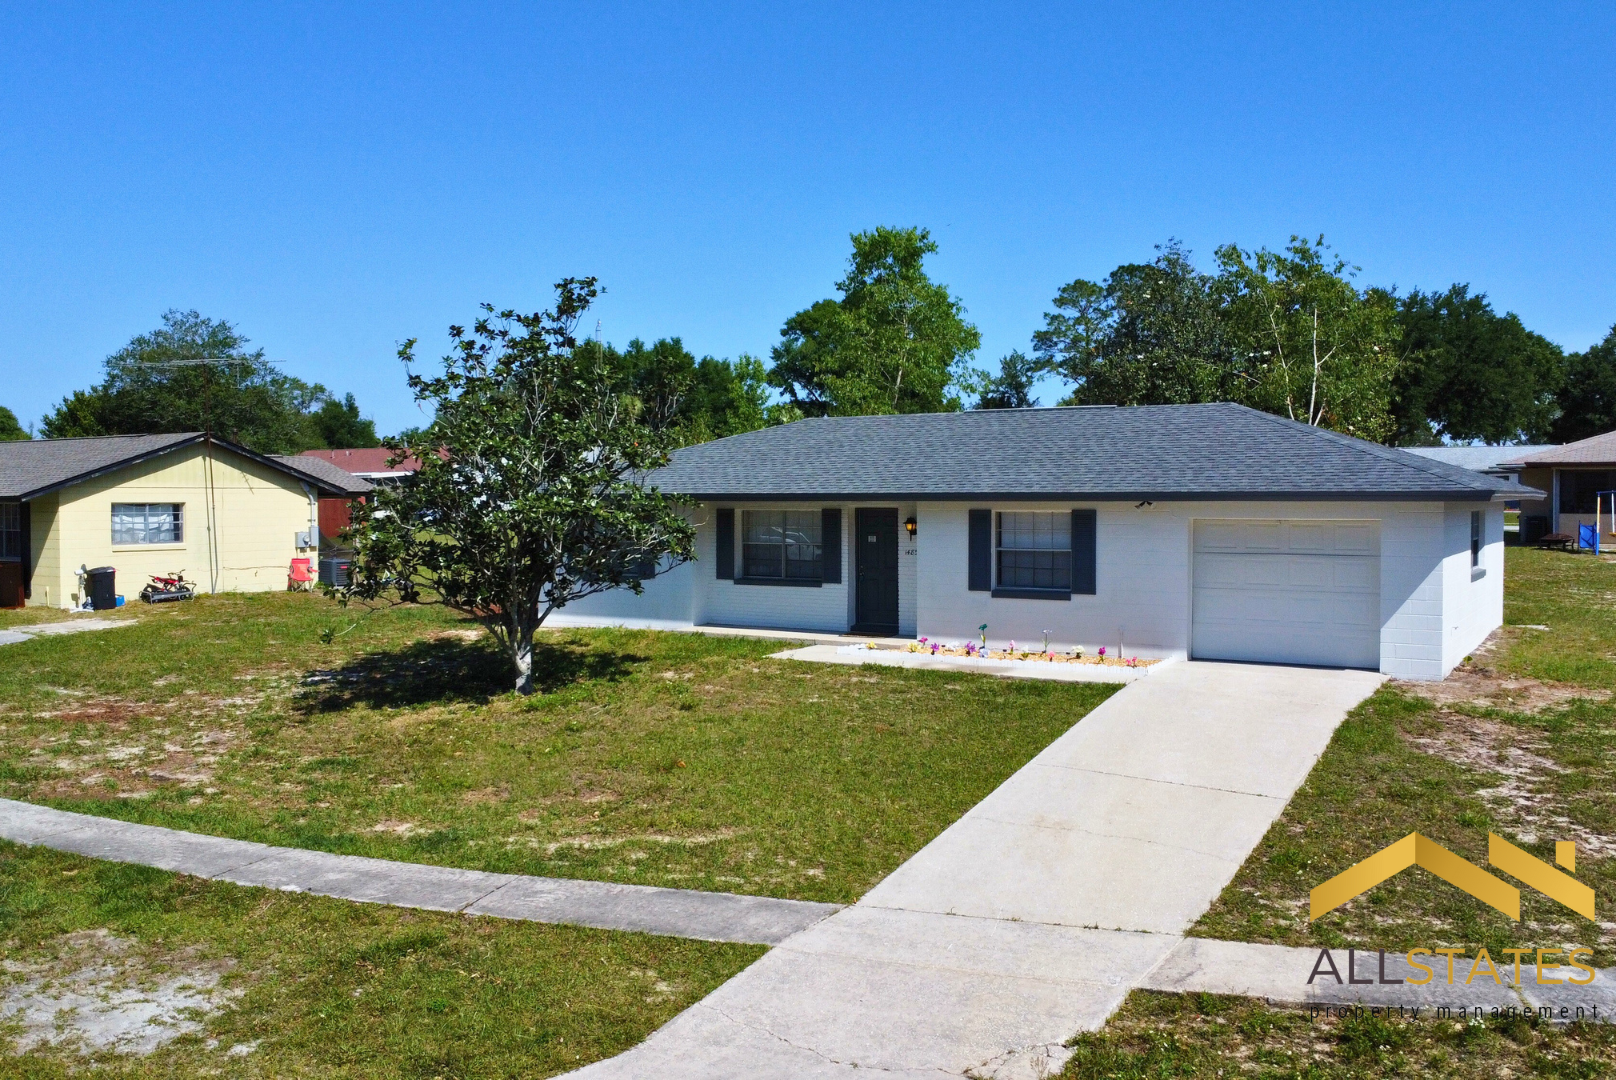 Photo of property: 14856 Southwest 35th Circle Ocala, FL 34473 